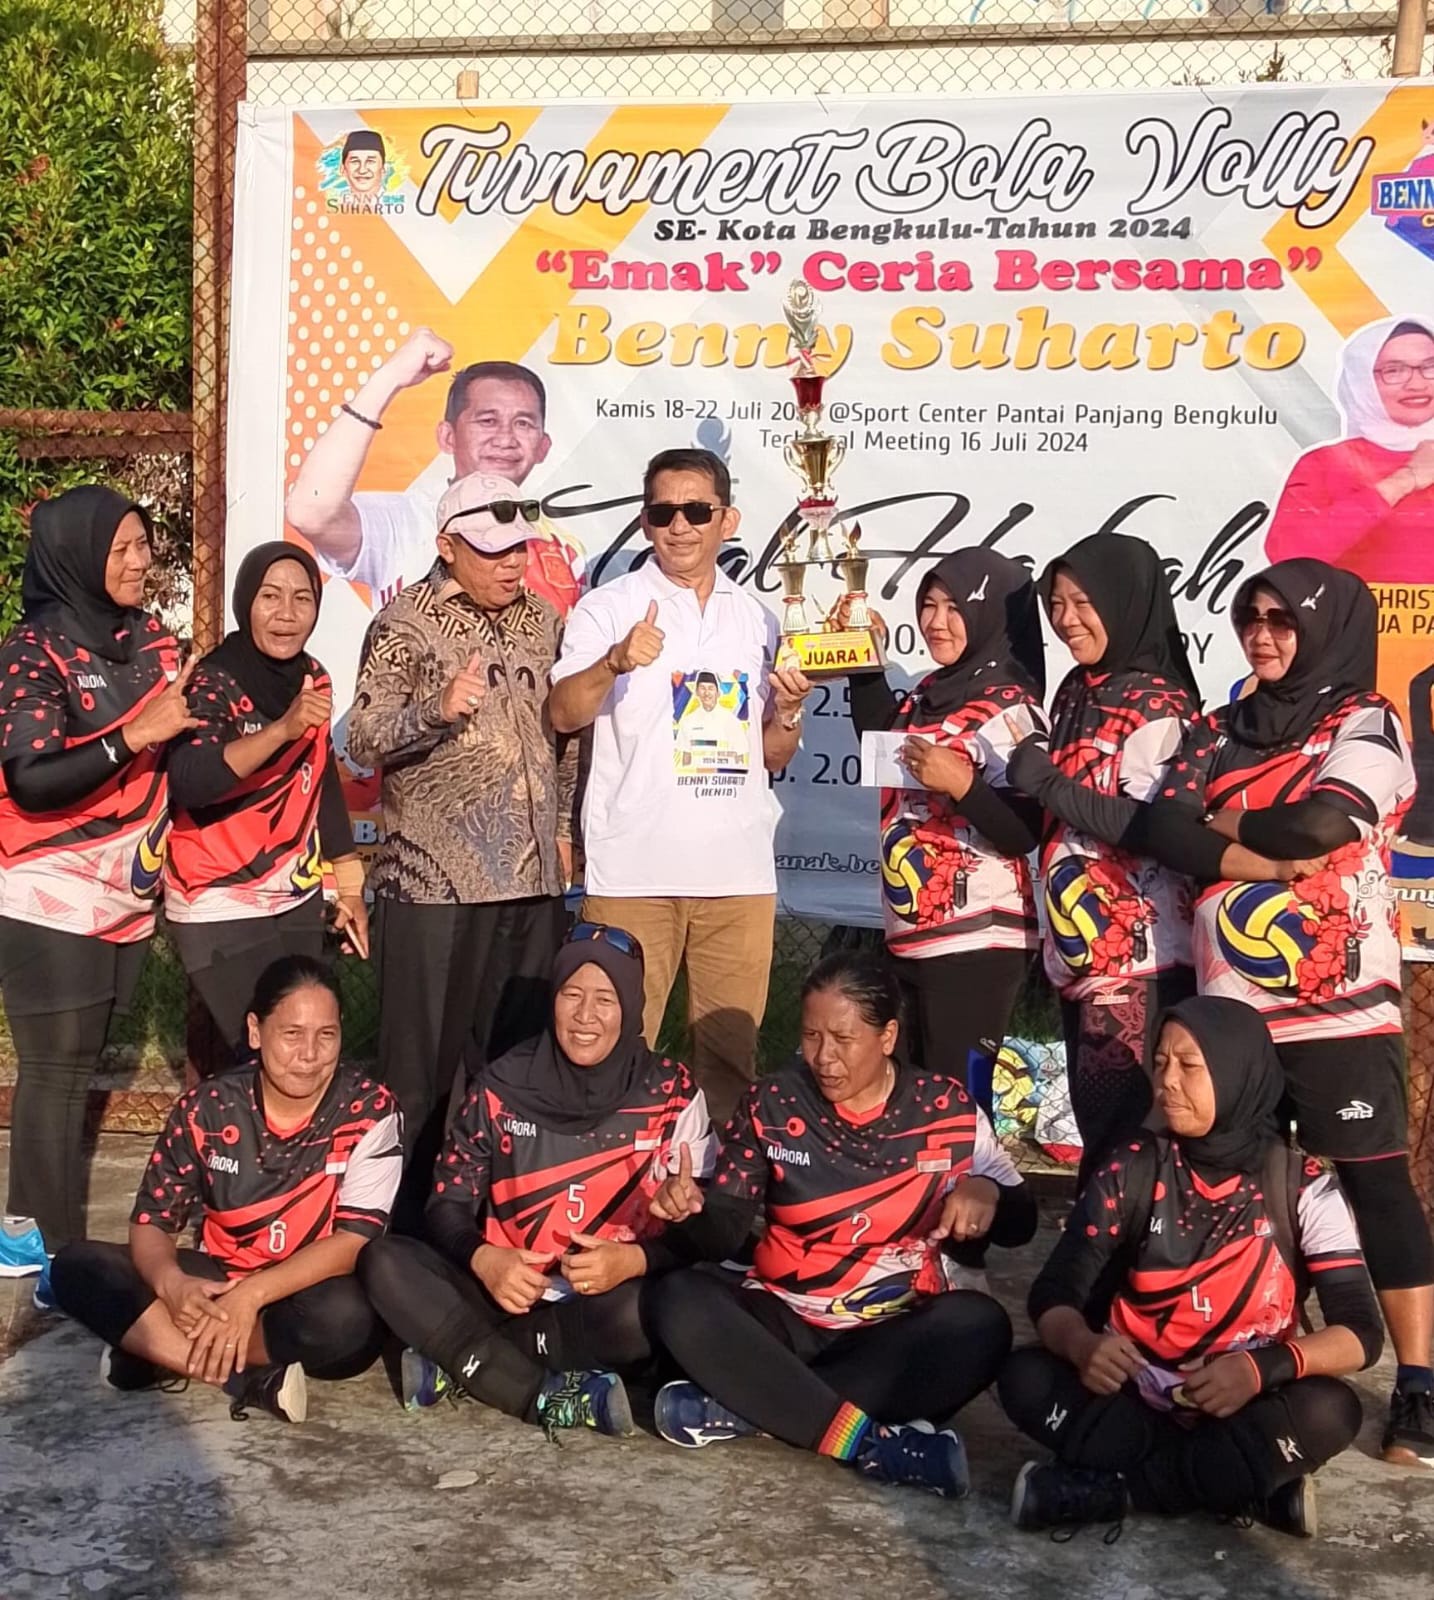 Benny Suharto Gelar Turnamen Voley Bagi Kaum Ibu di Kota Bengkulu